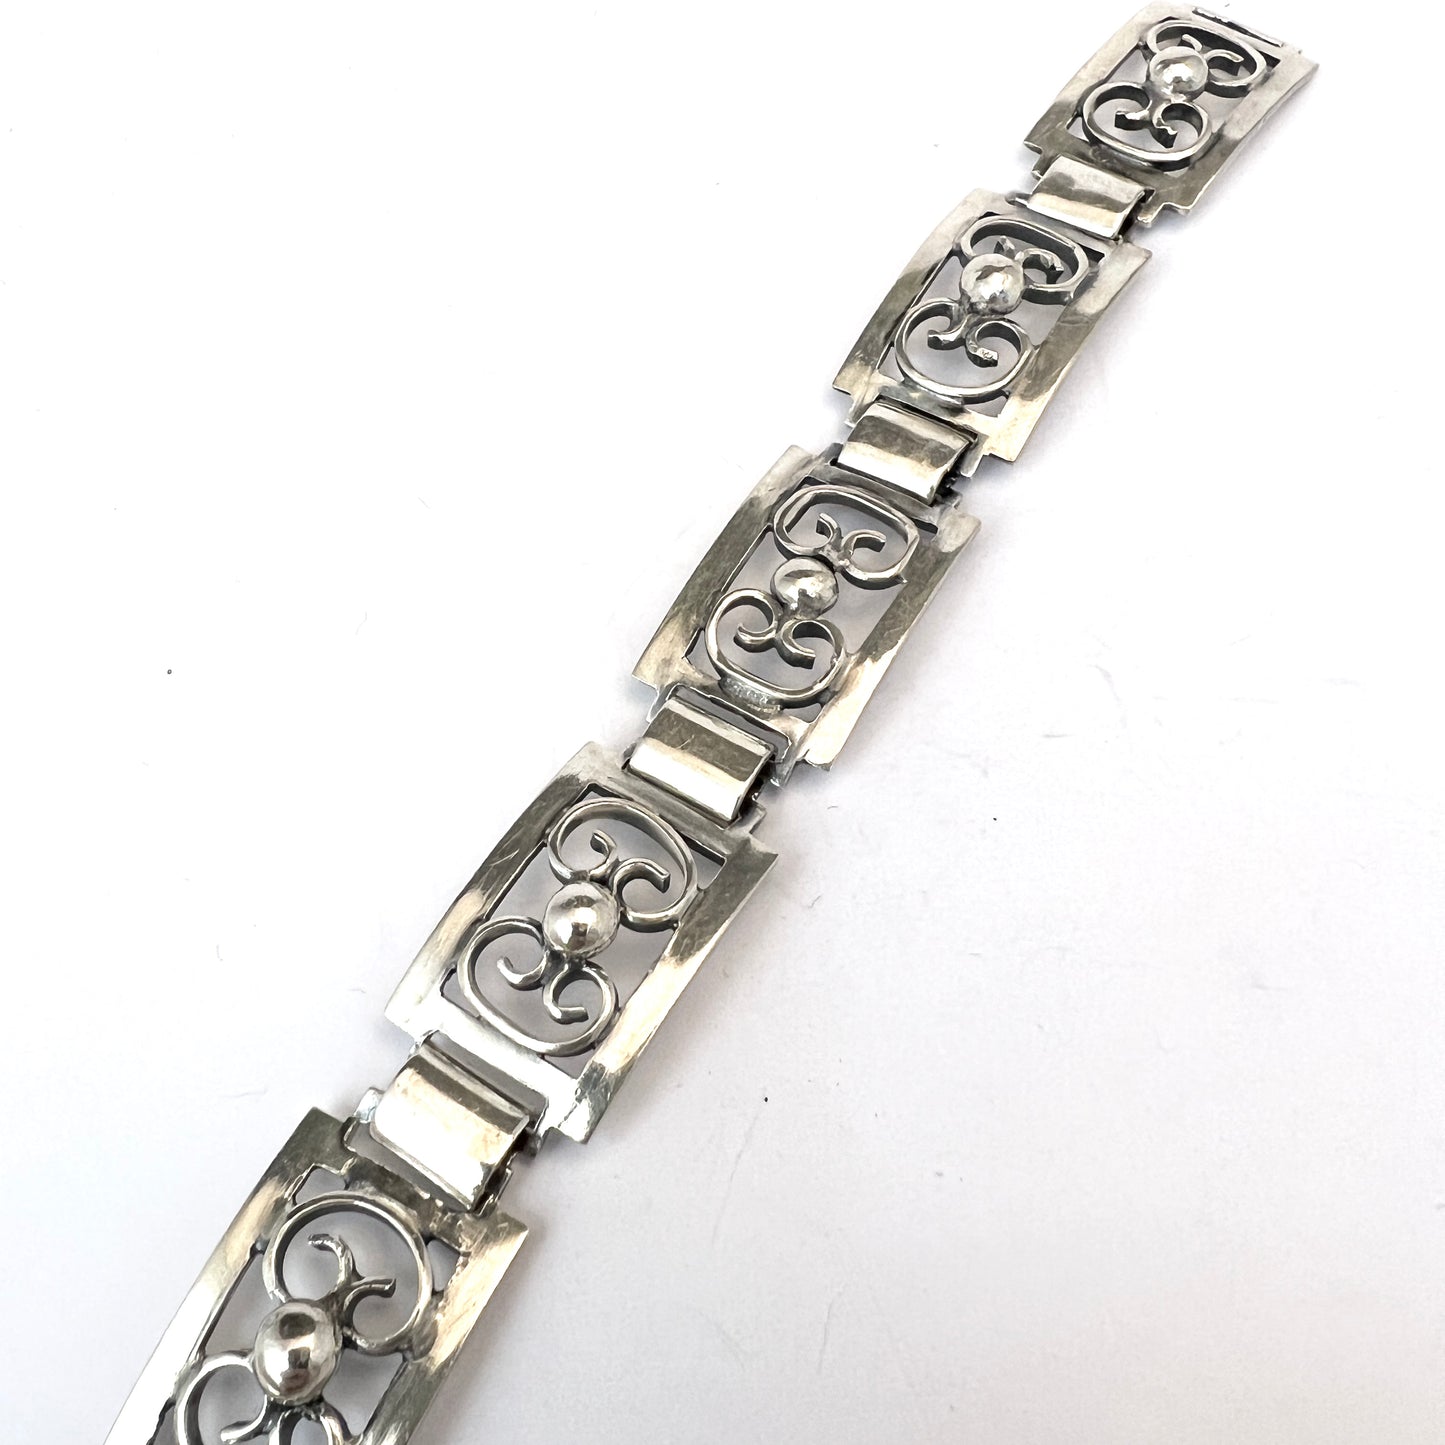 Ceson Gothenburg, Sweden 1965. Vintage Solid Silver Link Bracelet.